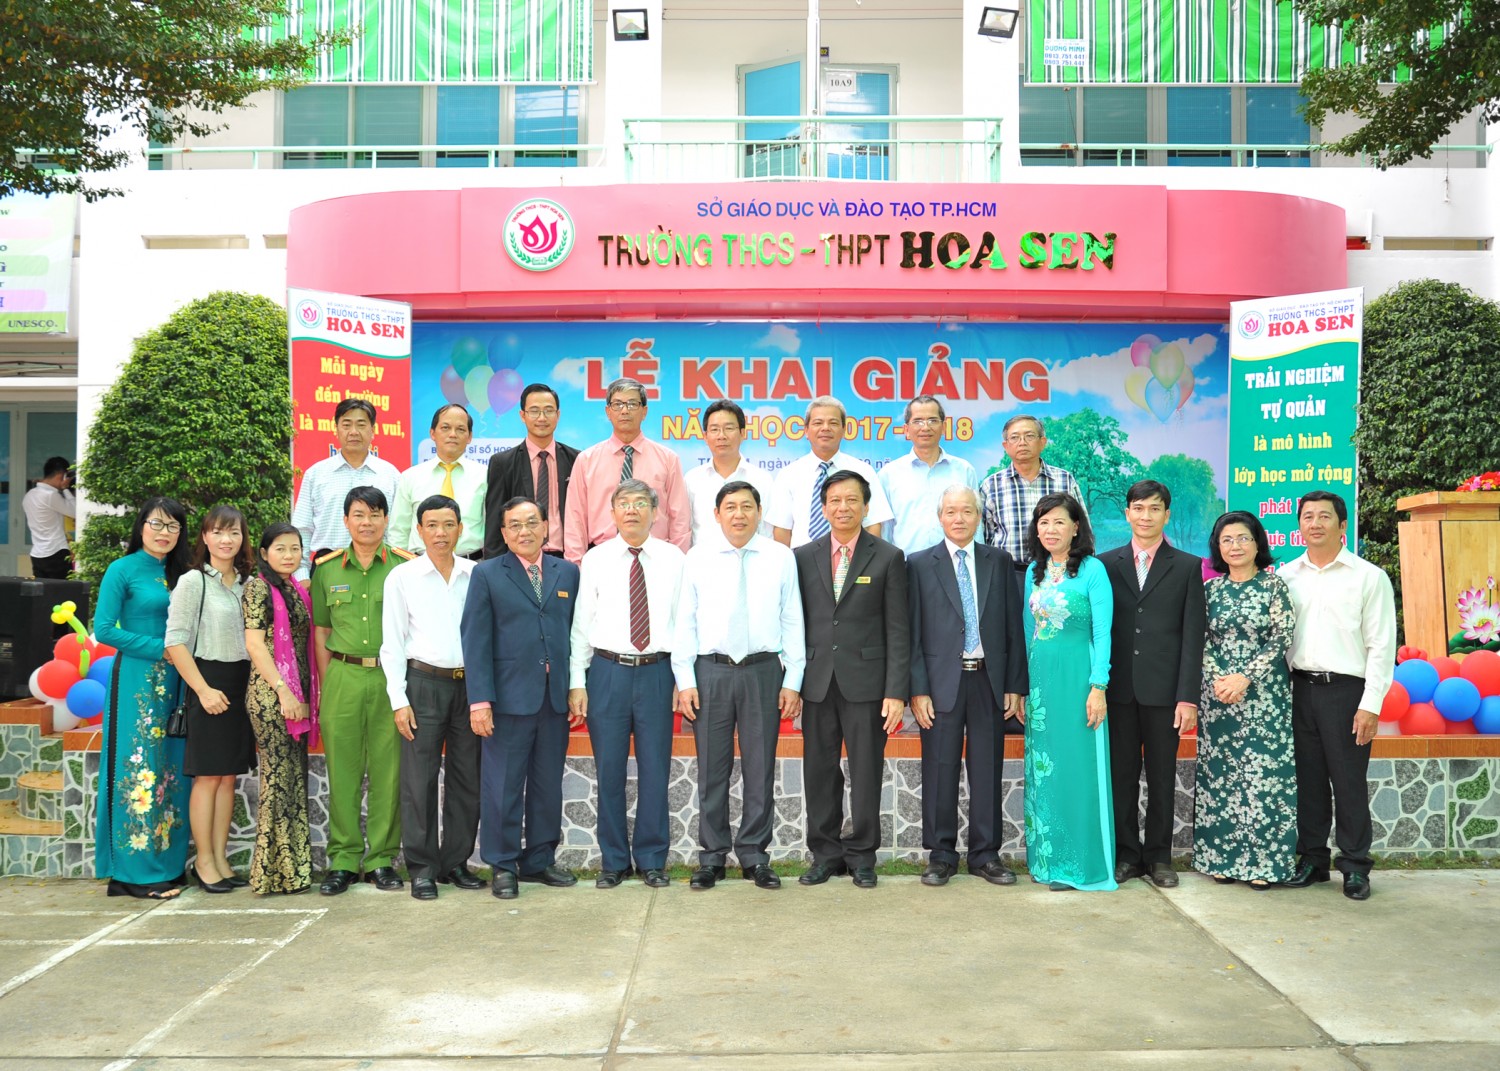 Trường THCS - THPT Hoa Sen ảnh 1